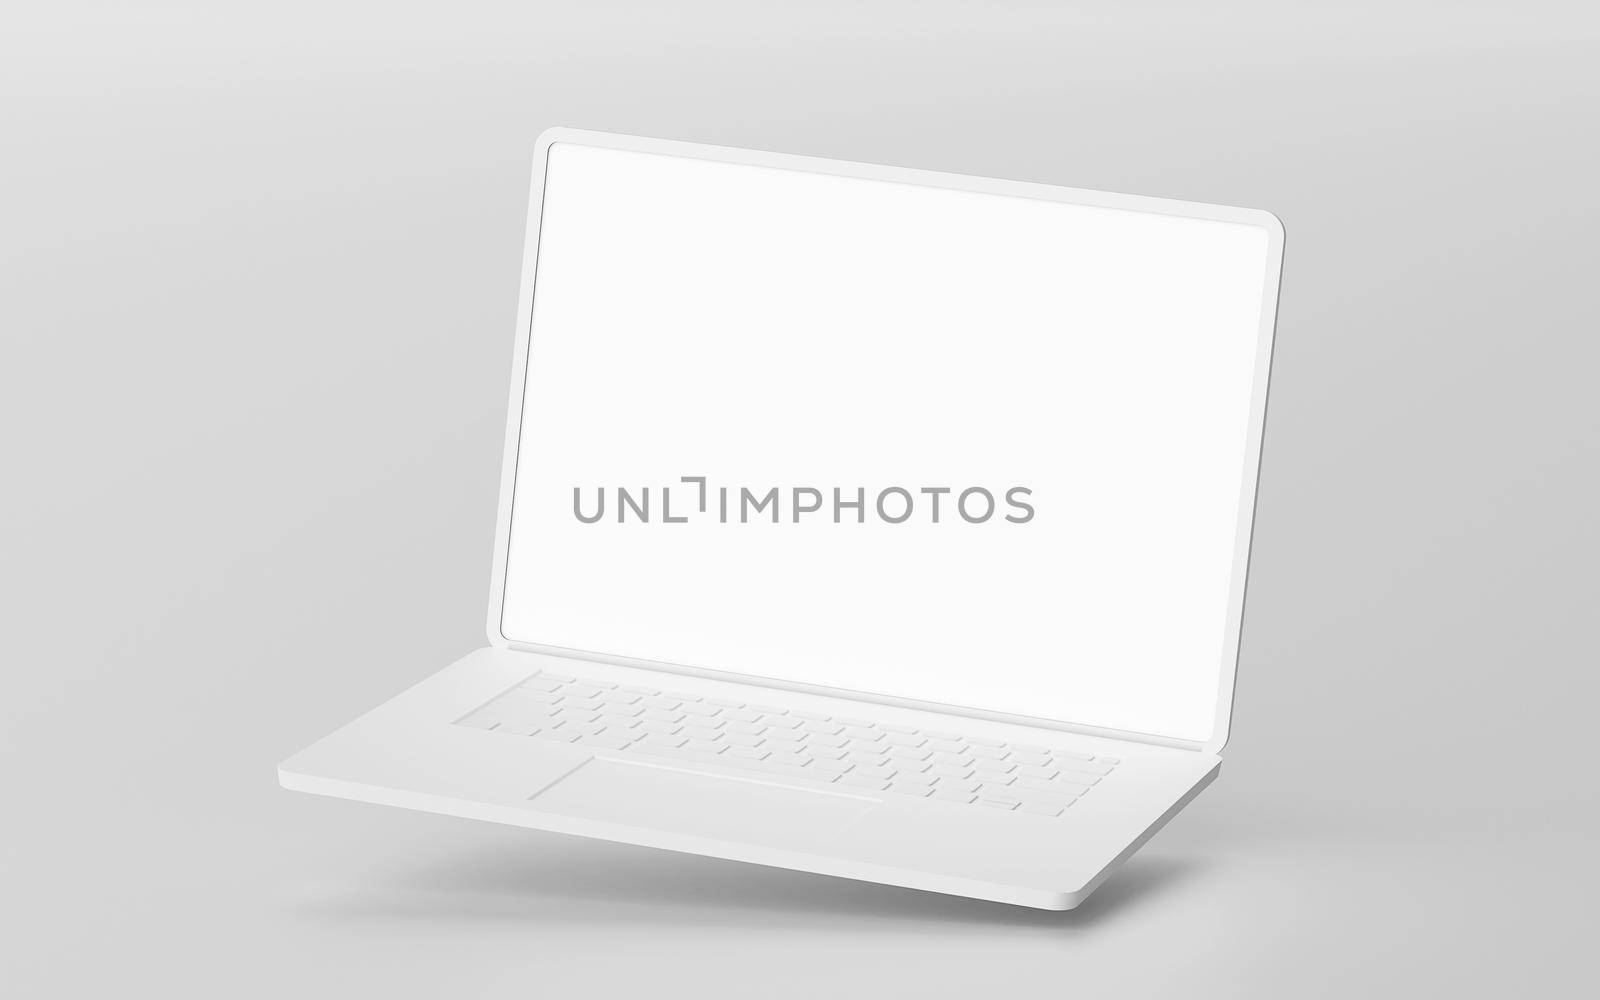 Minimalistic floating laptop blank screen mockup, 3d rendering by nutzchotwarut